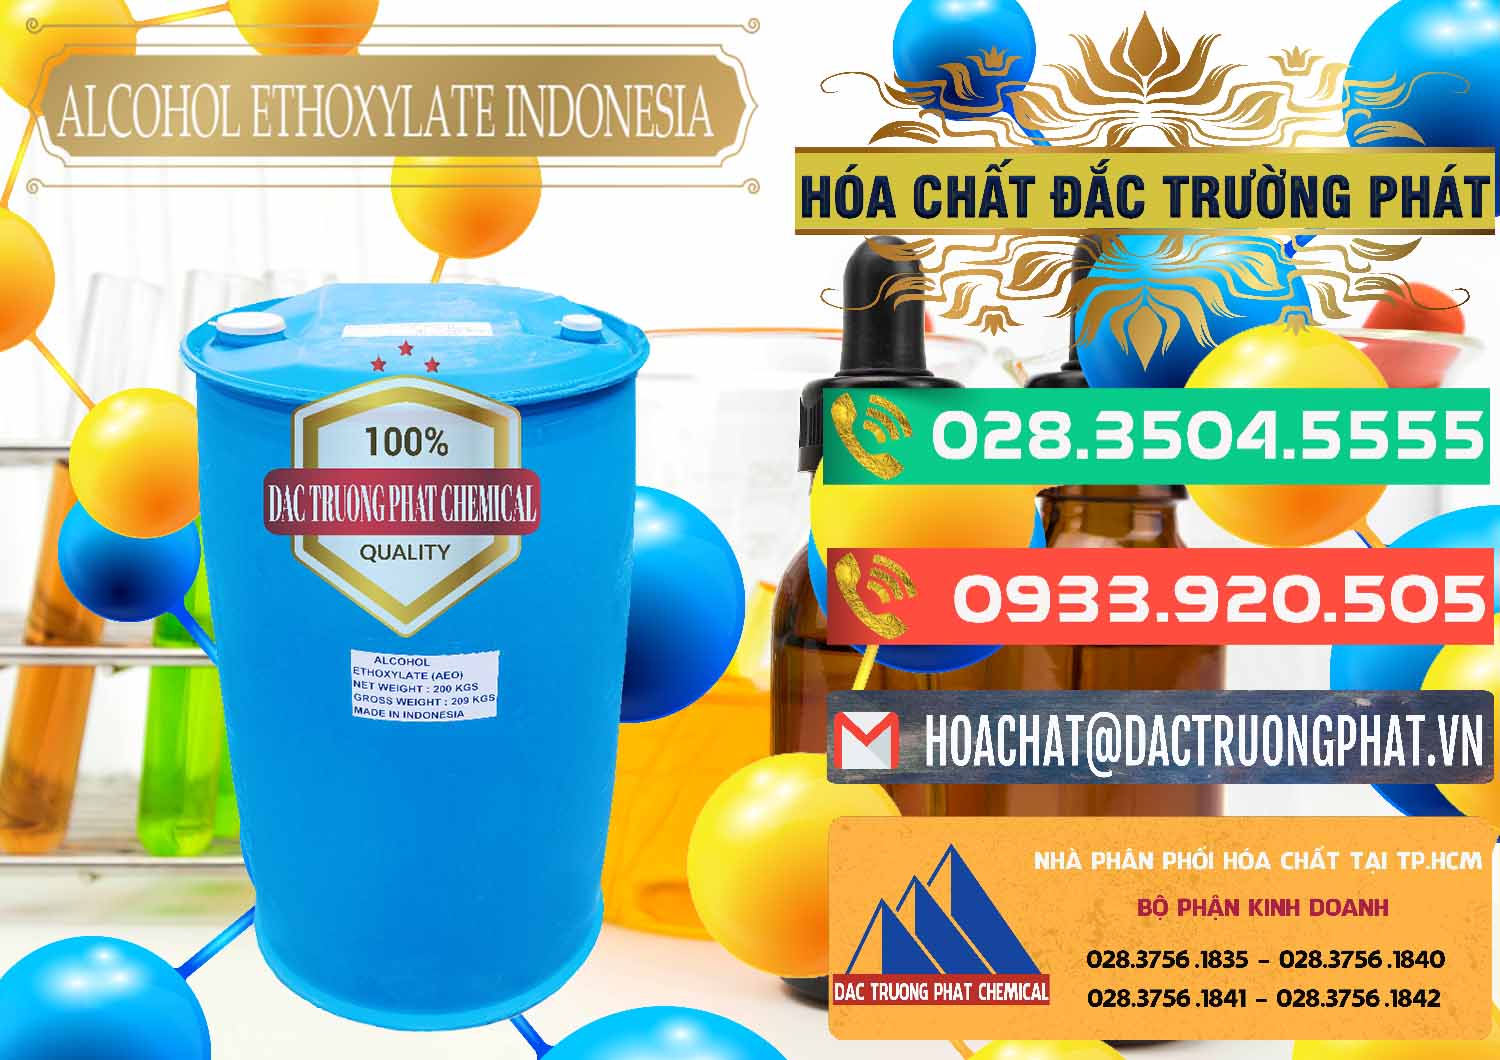 Nơi chuyên nhập khẩu và bán Alcohol Ethoxylate Indonesia - 0308 - Công ty chuyên kinh doanh ( phân phối ) hóa chất tại TP.HCM - congtyhoachat.com.vn